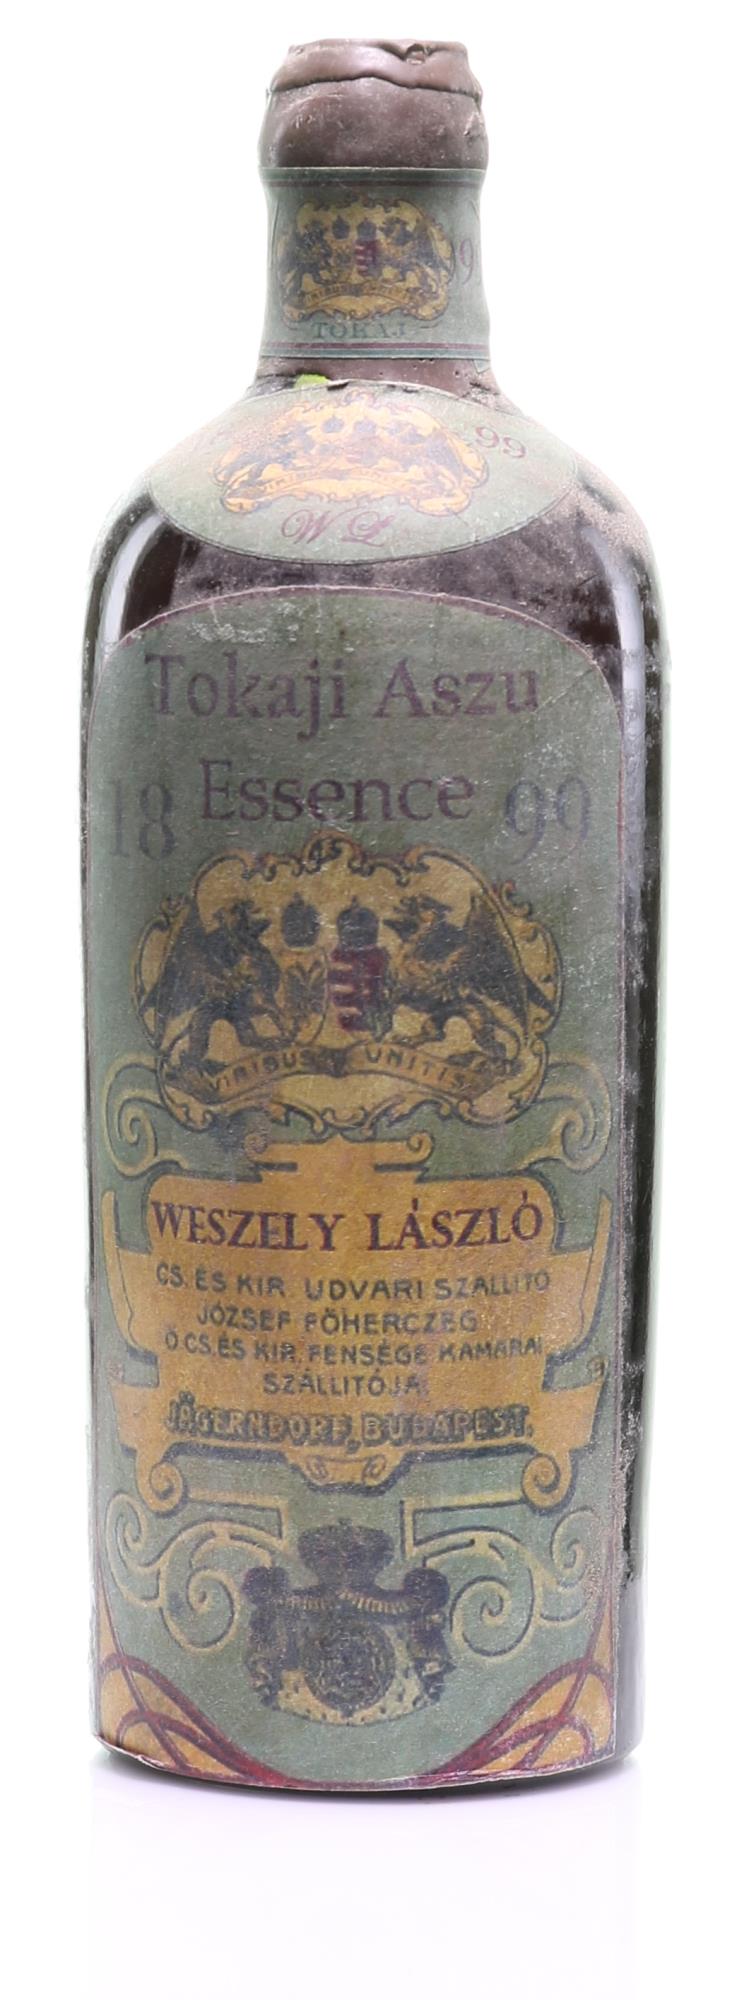 1899 Tokaji Aszú Essencia Weszely László - Rue Pinard